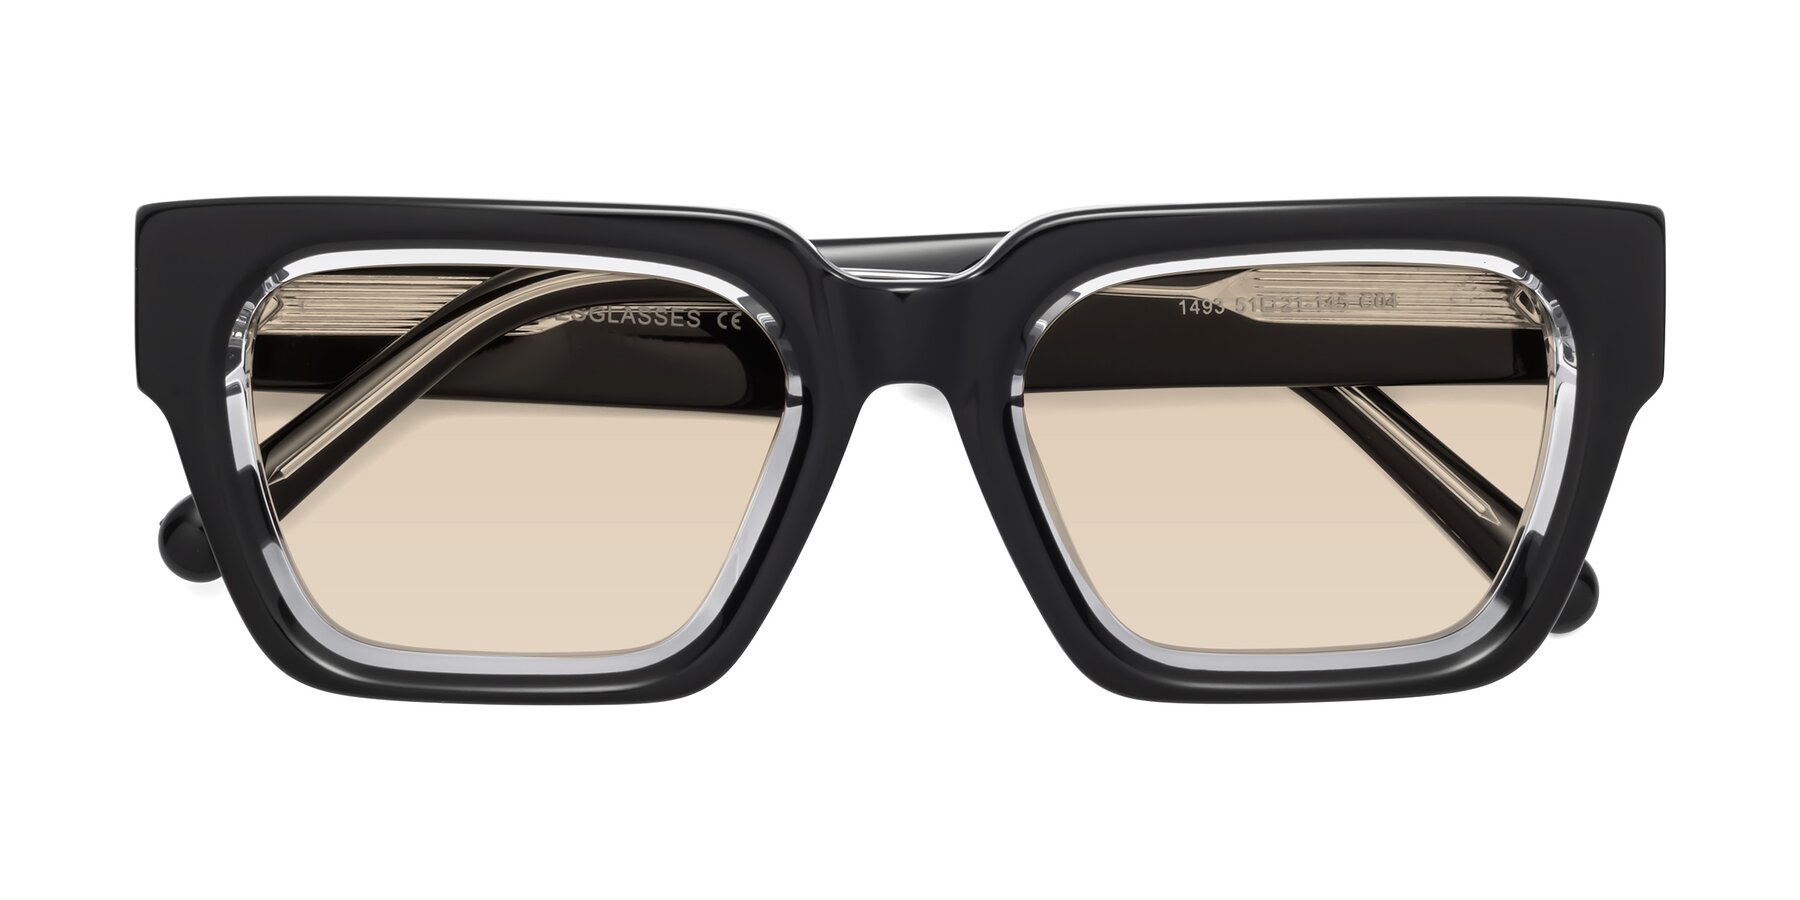 Translusant Beige Square Acetate Sunglasses Online - Full-Rim - Cabana - 1.6 Basic Tint Lenses